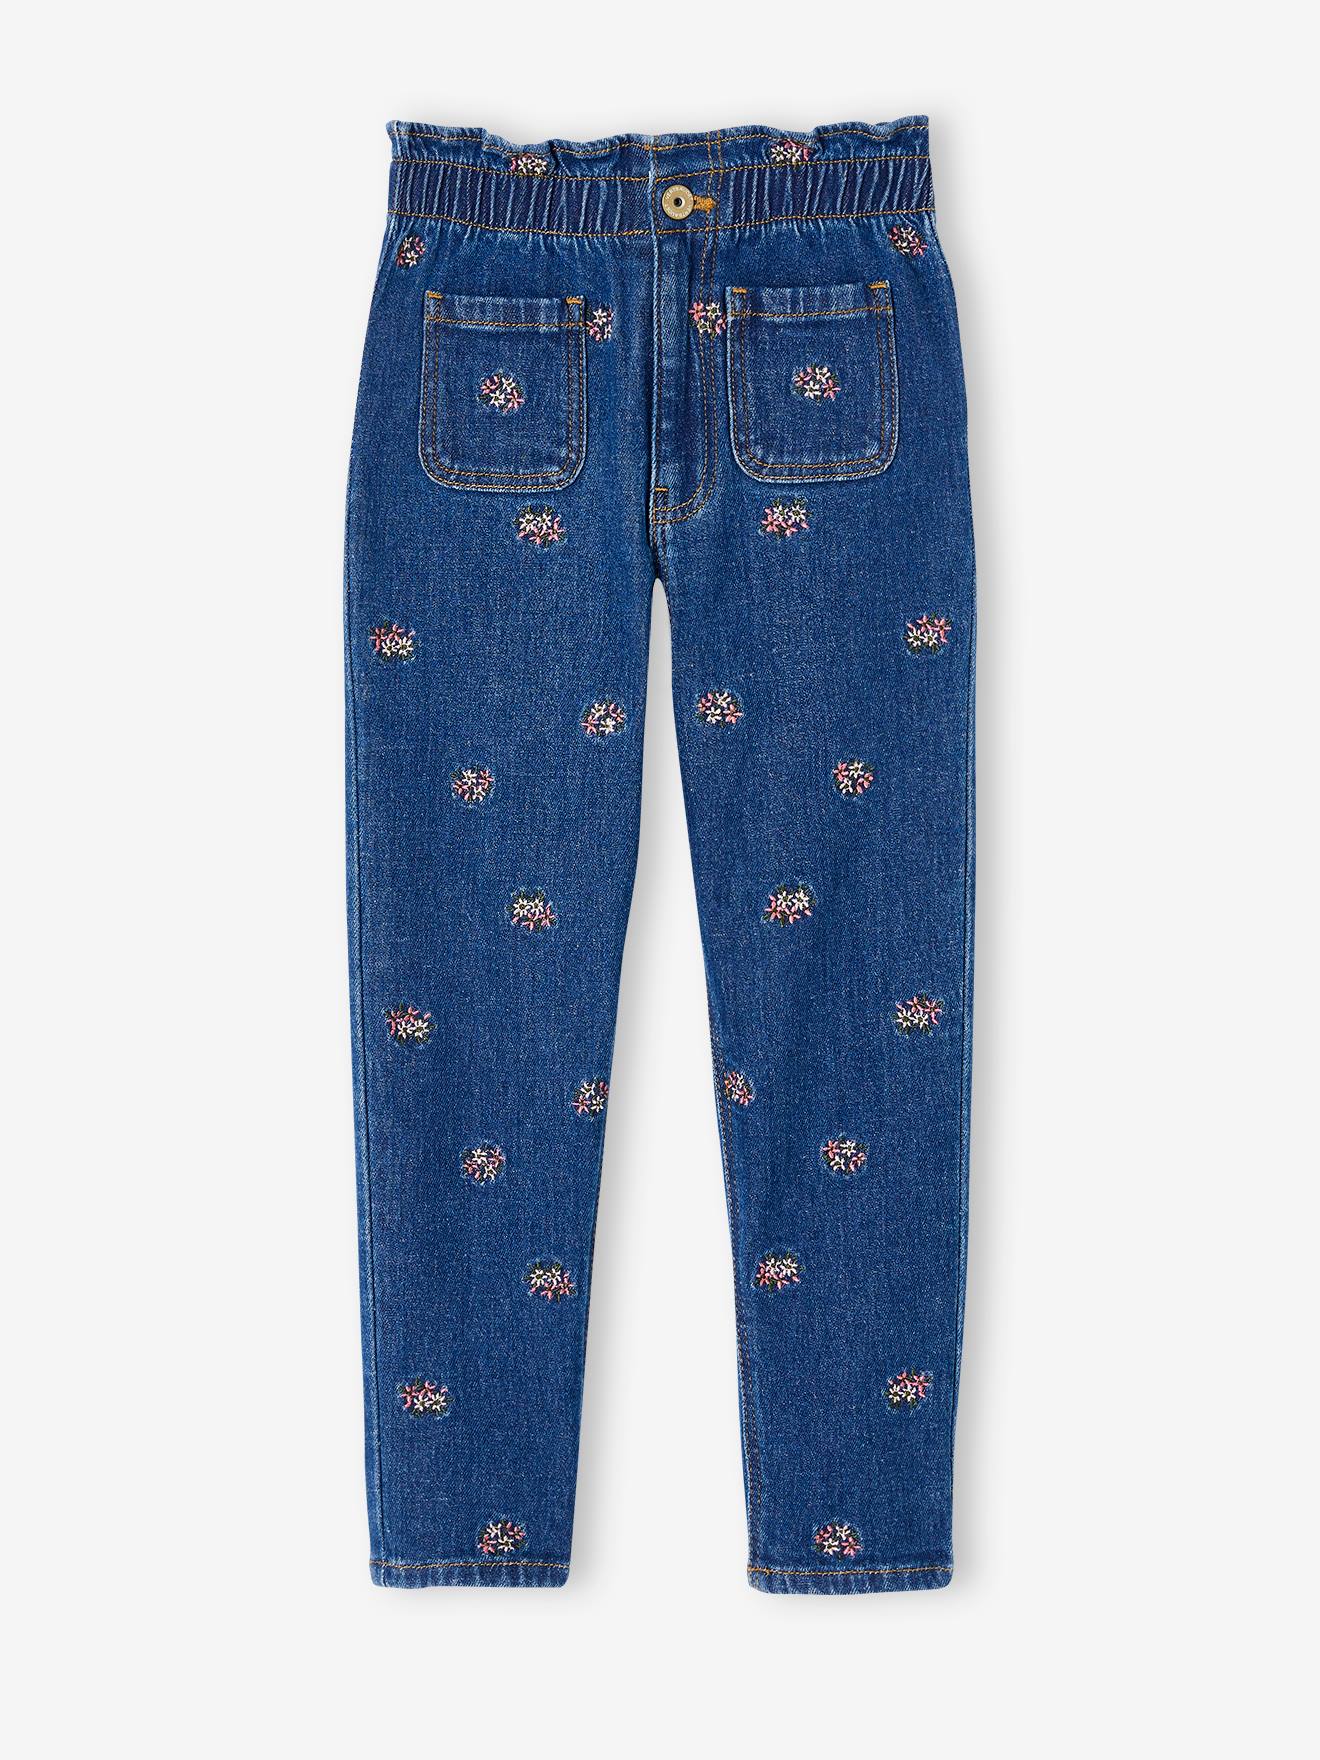 VERTBAUDET Pantalón estilo «paperbag» con bordado de flores para niña azul jeans